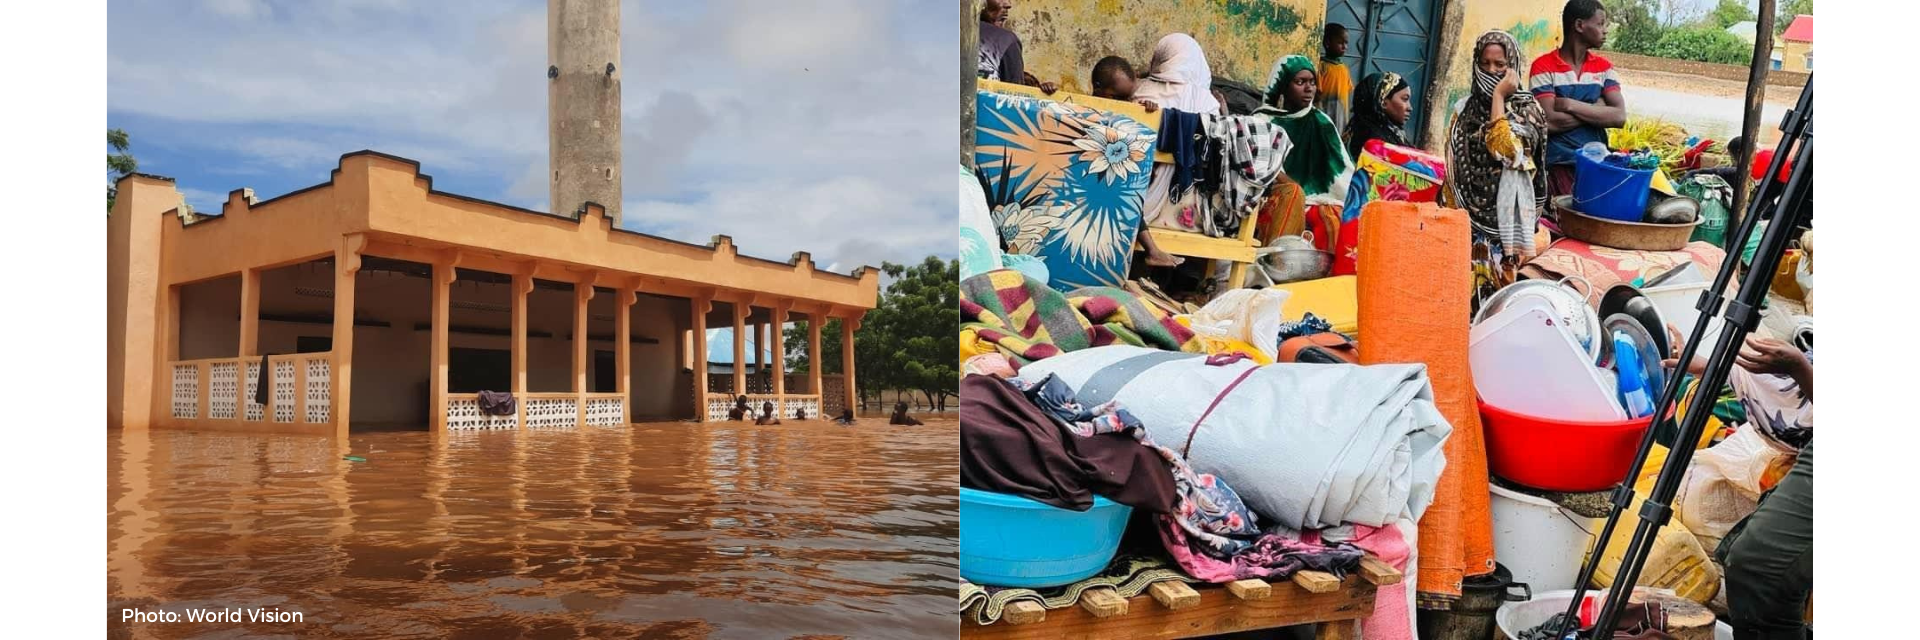 Somalia floods and aid